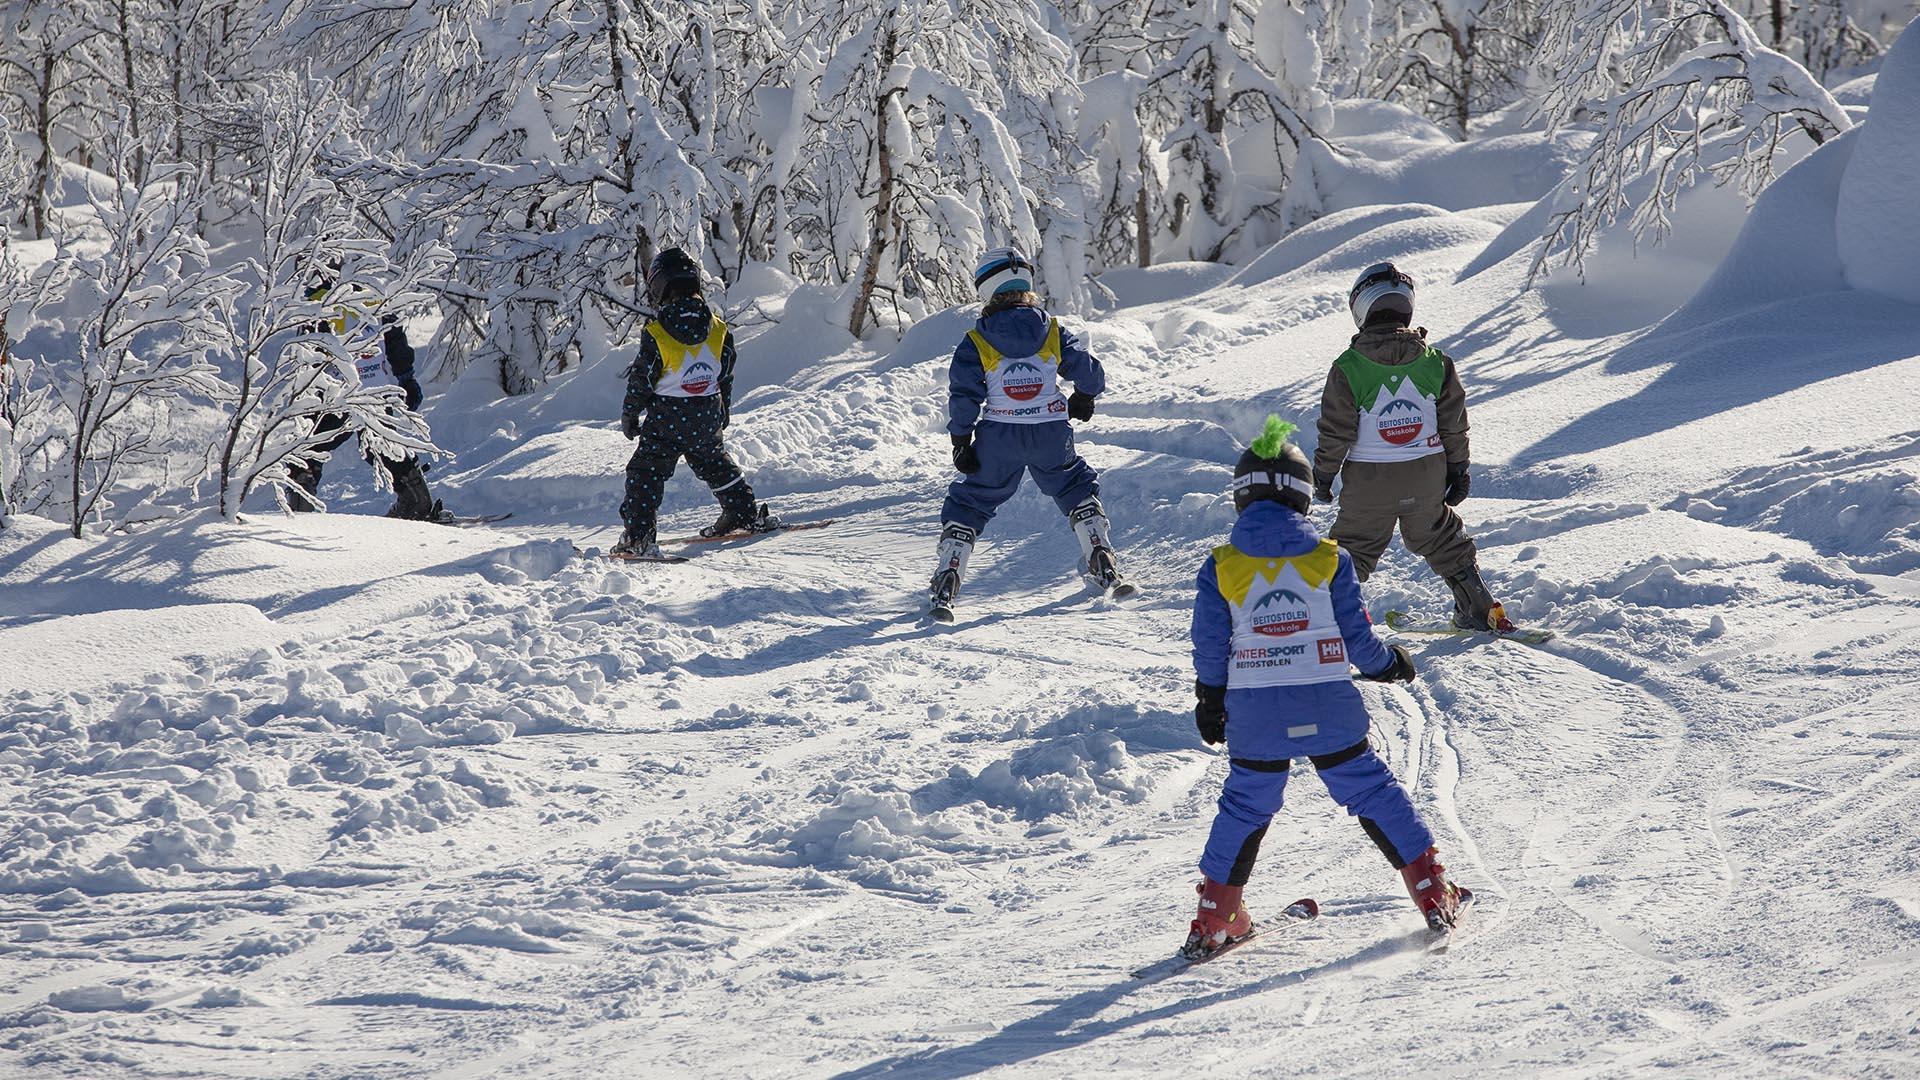 En gruppe barn på ski med skiskole-vester kjører en skogsløype